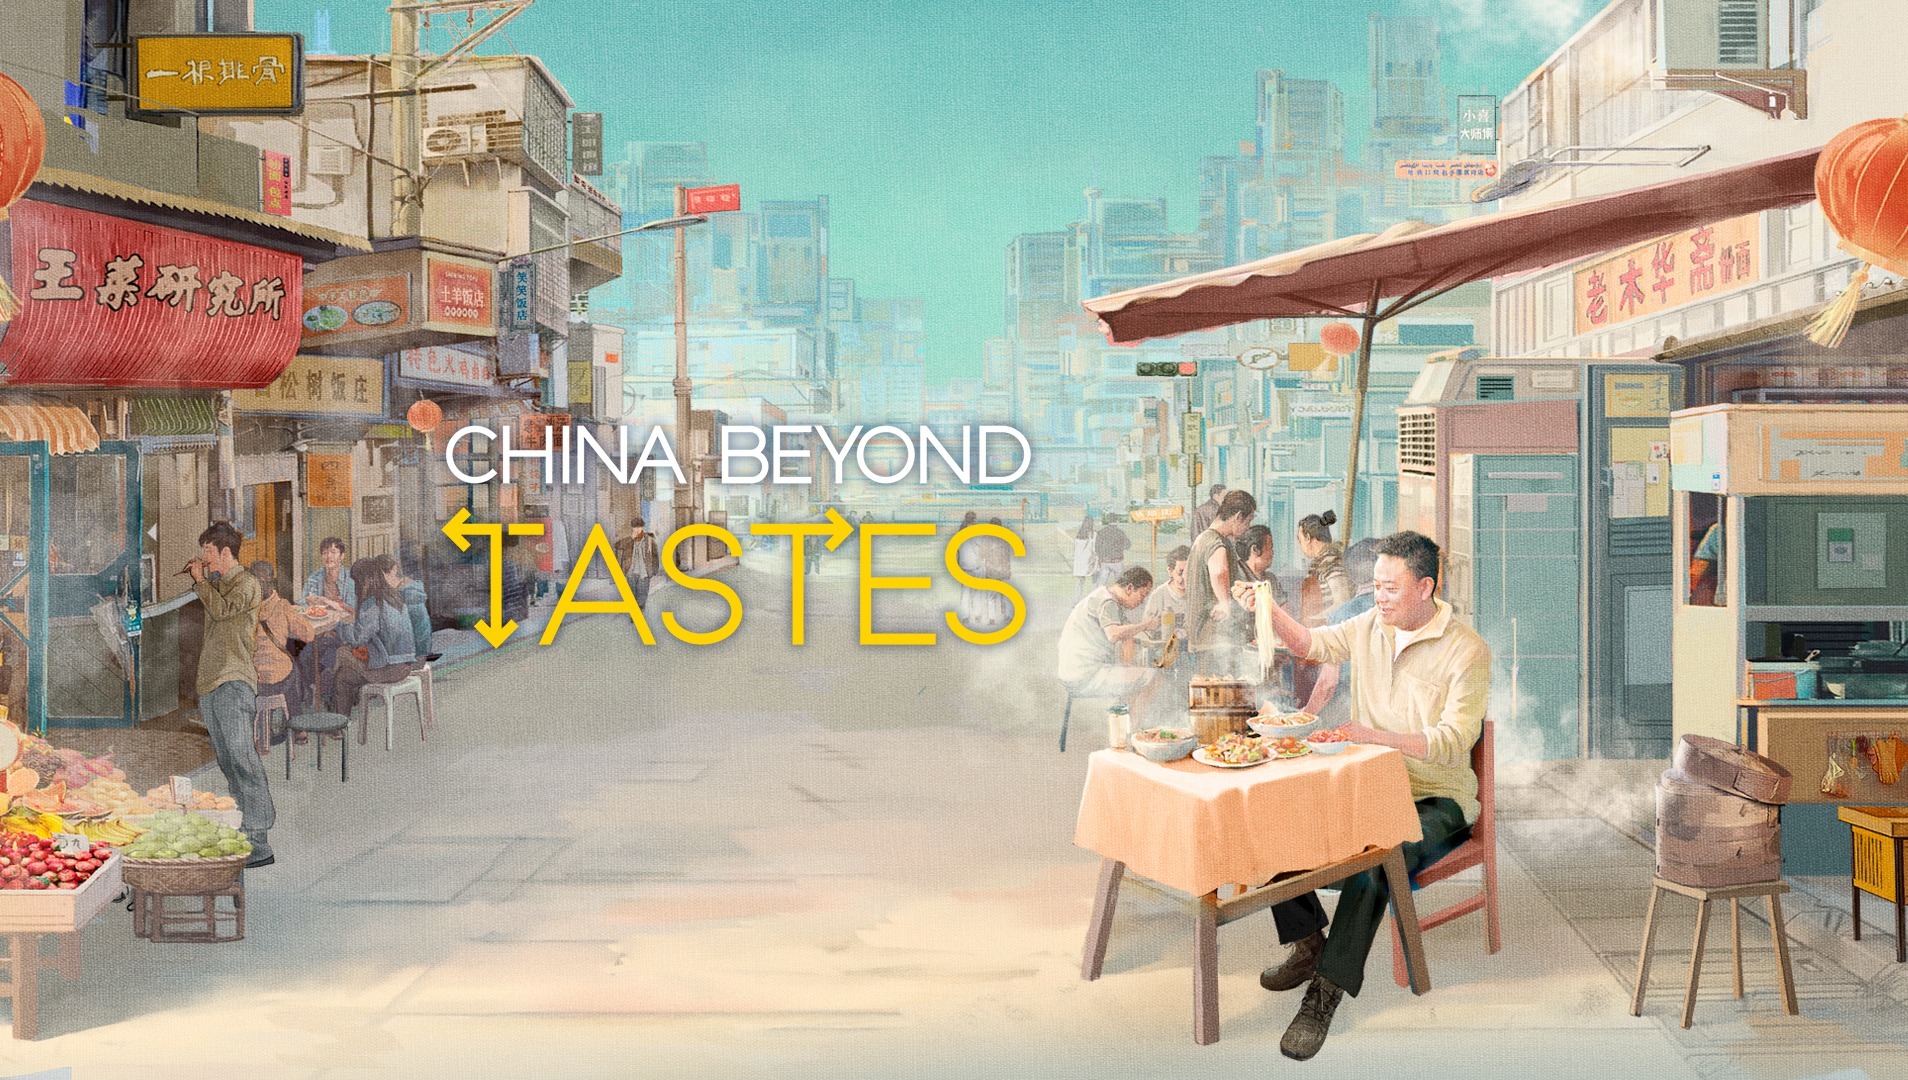 China Beyond Tastes